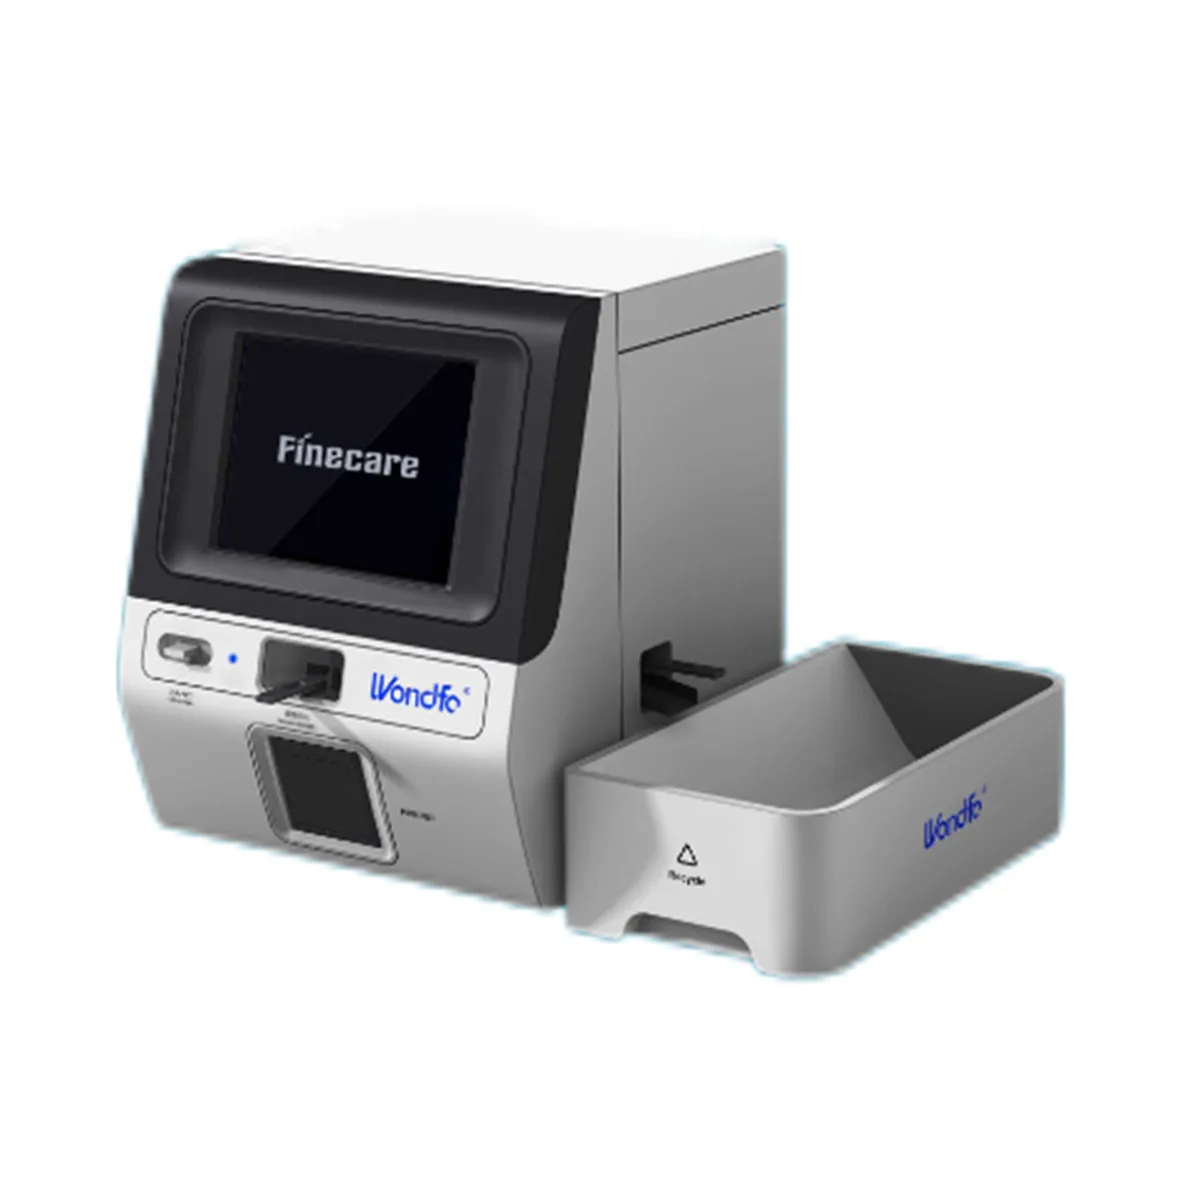 

Wondfo FIA Meter Multi Channel Finecare III 3 PLUS fluorescence diagnose progesterone Clinic Test machine